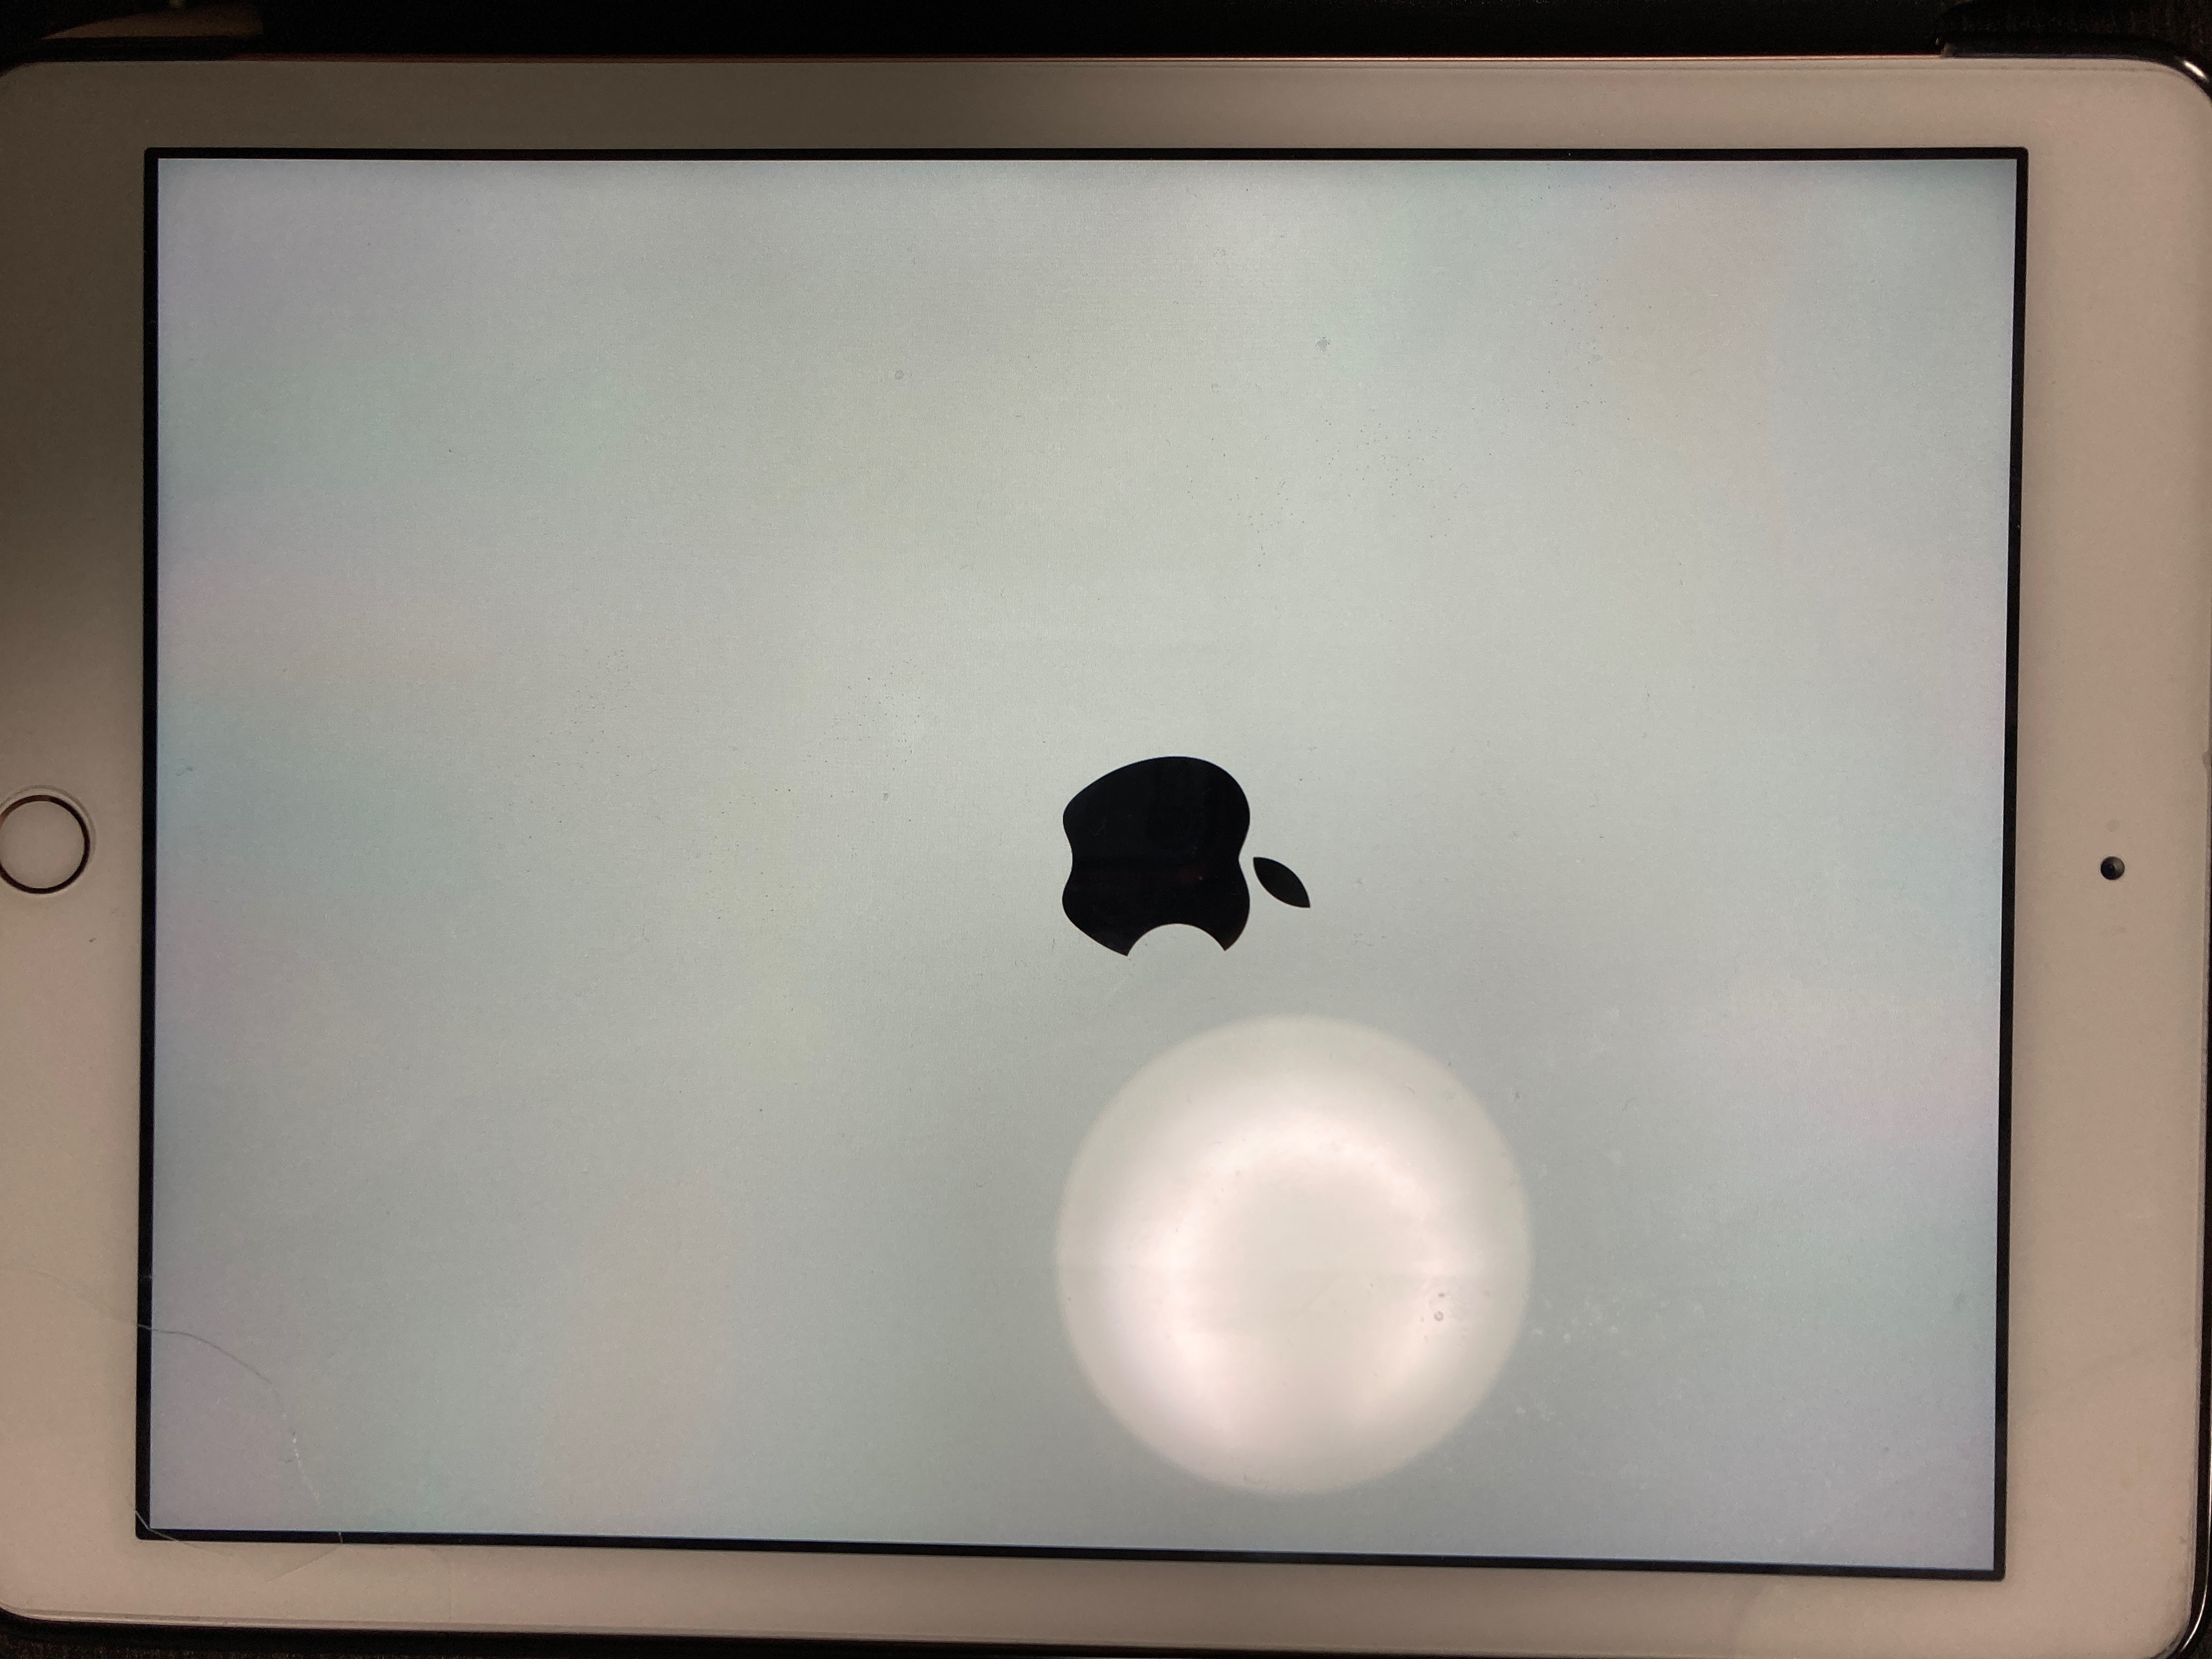 Ipadがアップルマーク画面でフリーズ Apple コミュニティ